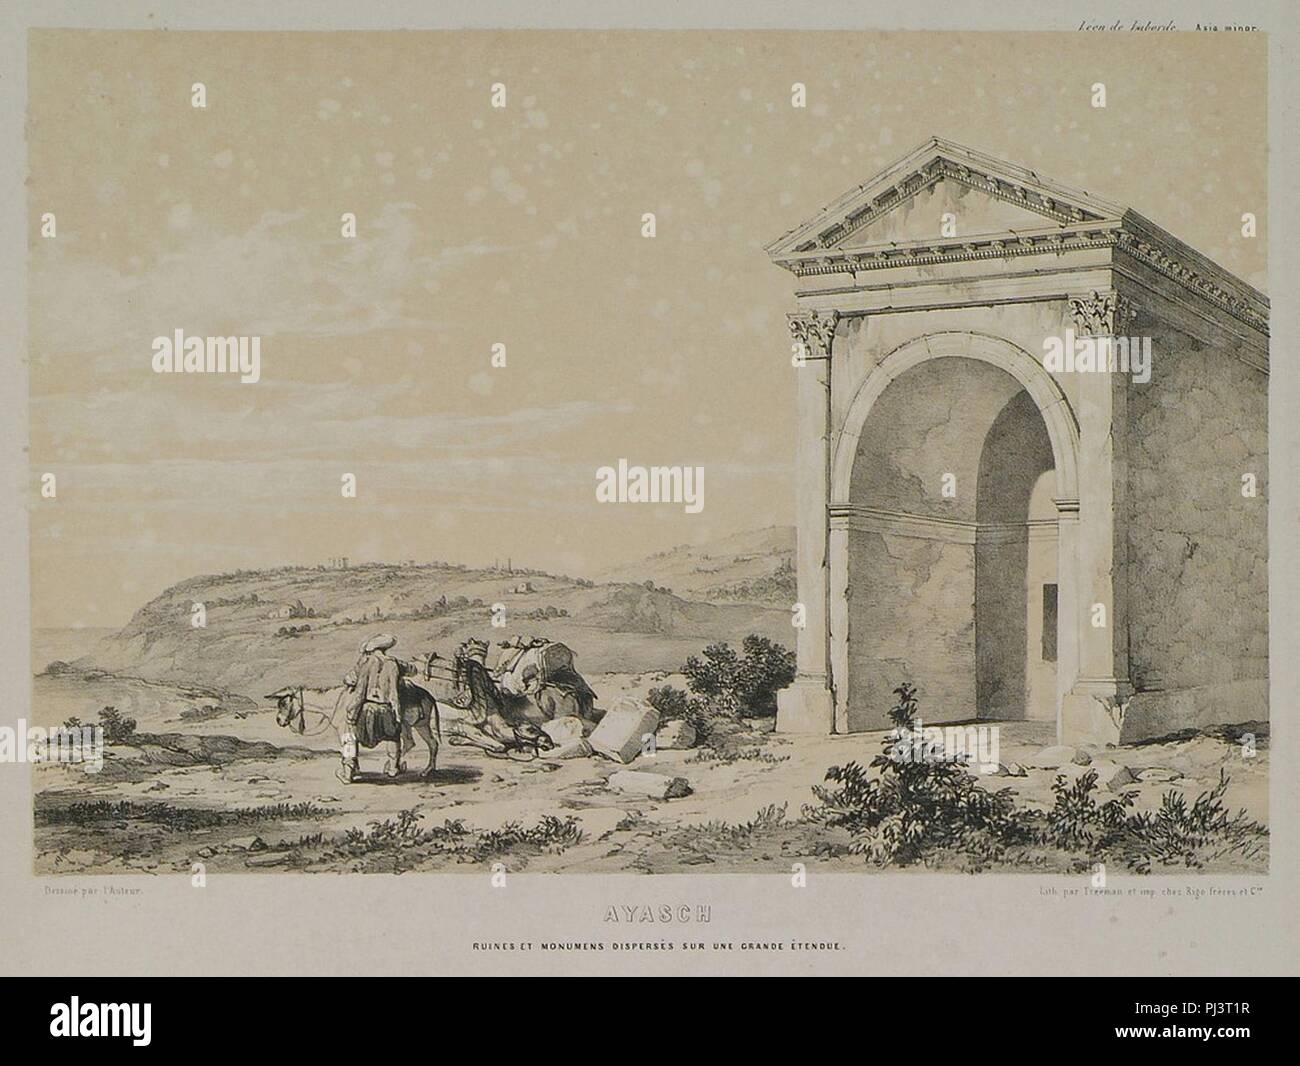 Ayasch Ruines et monuments dispersés sur une grande étendue - Laborde Léon Emmanuel Simon Joseph - 1838. Stock Photo